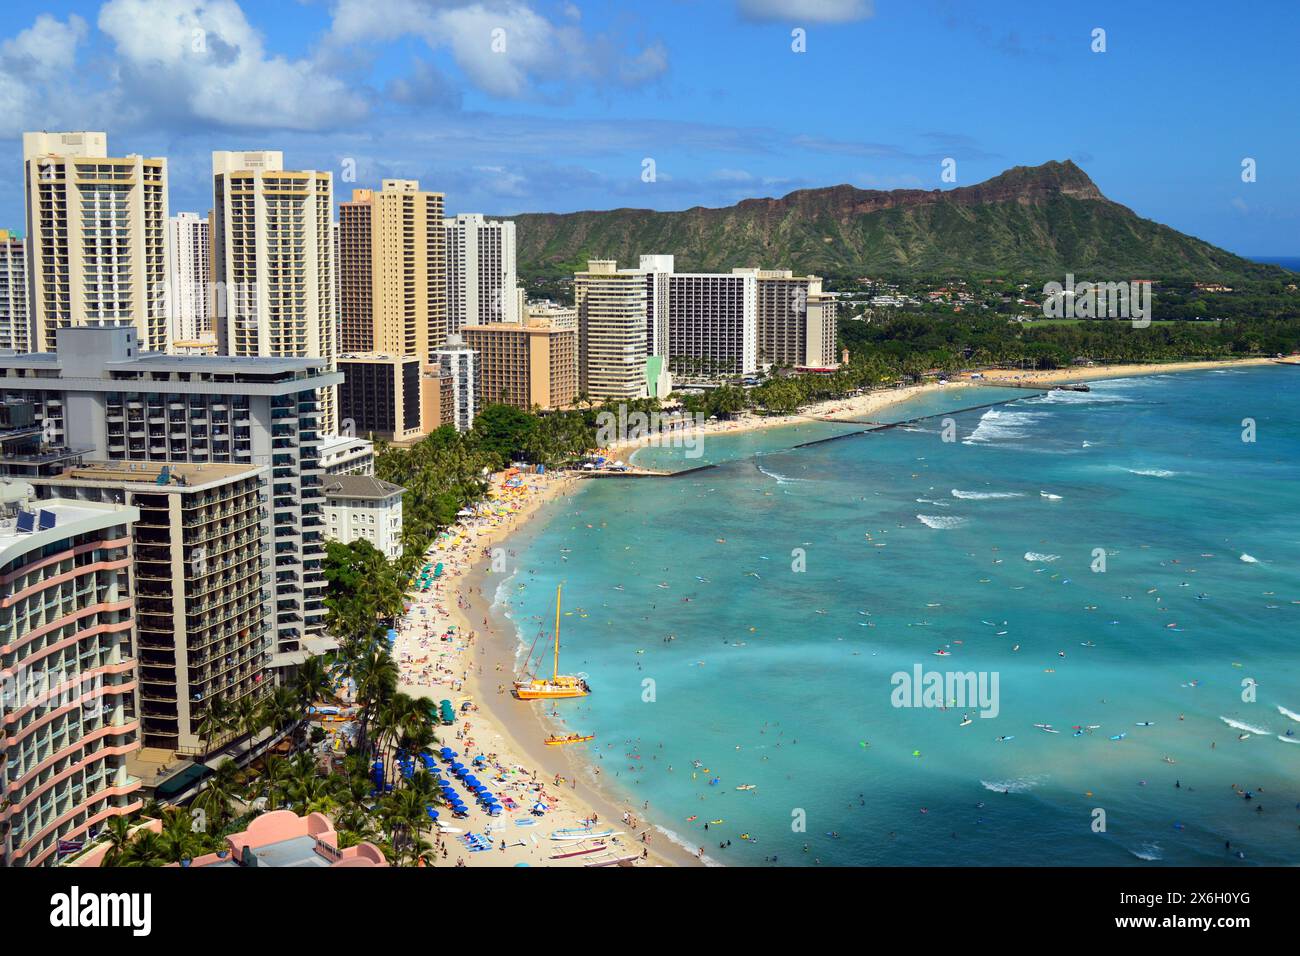 Ein fantastischer Blick aus der Luft auf den Sand am Ufer von Waikiki Beach. Hawaii erstreckt sich an den Hotels und Resorts vorbei bis zum Diamond Head Mountain Stockfoto